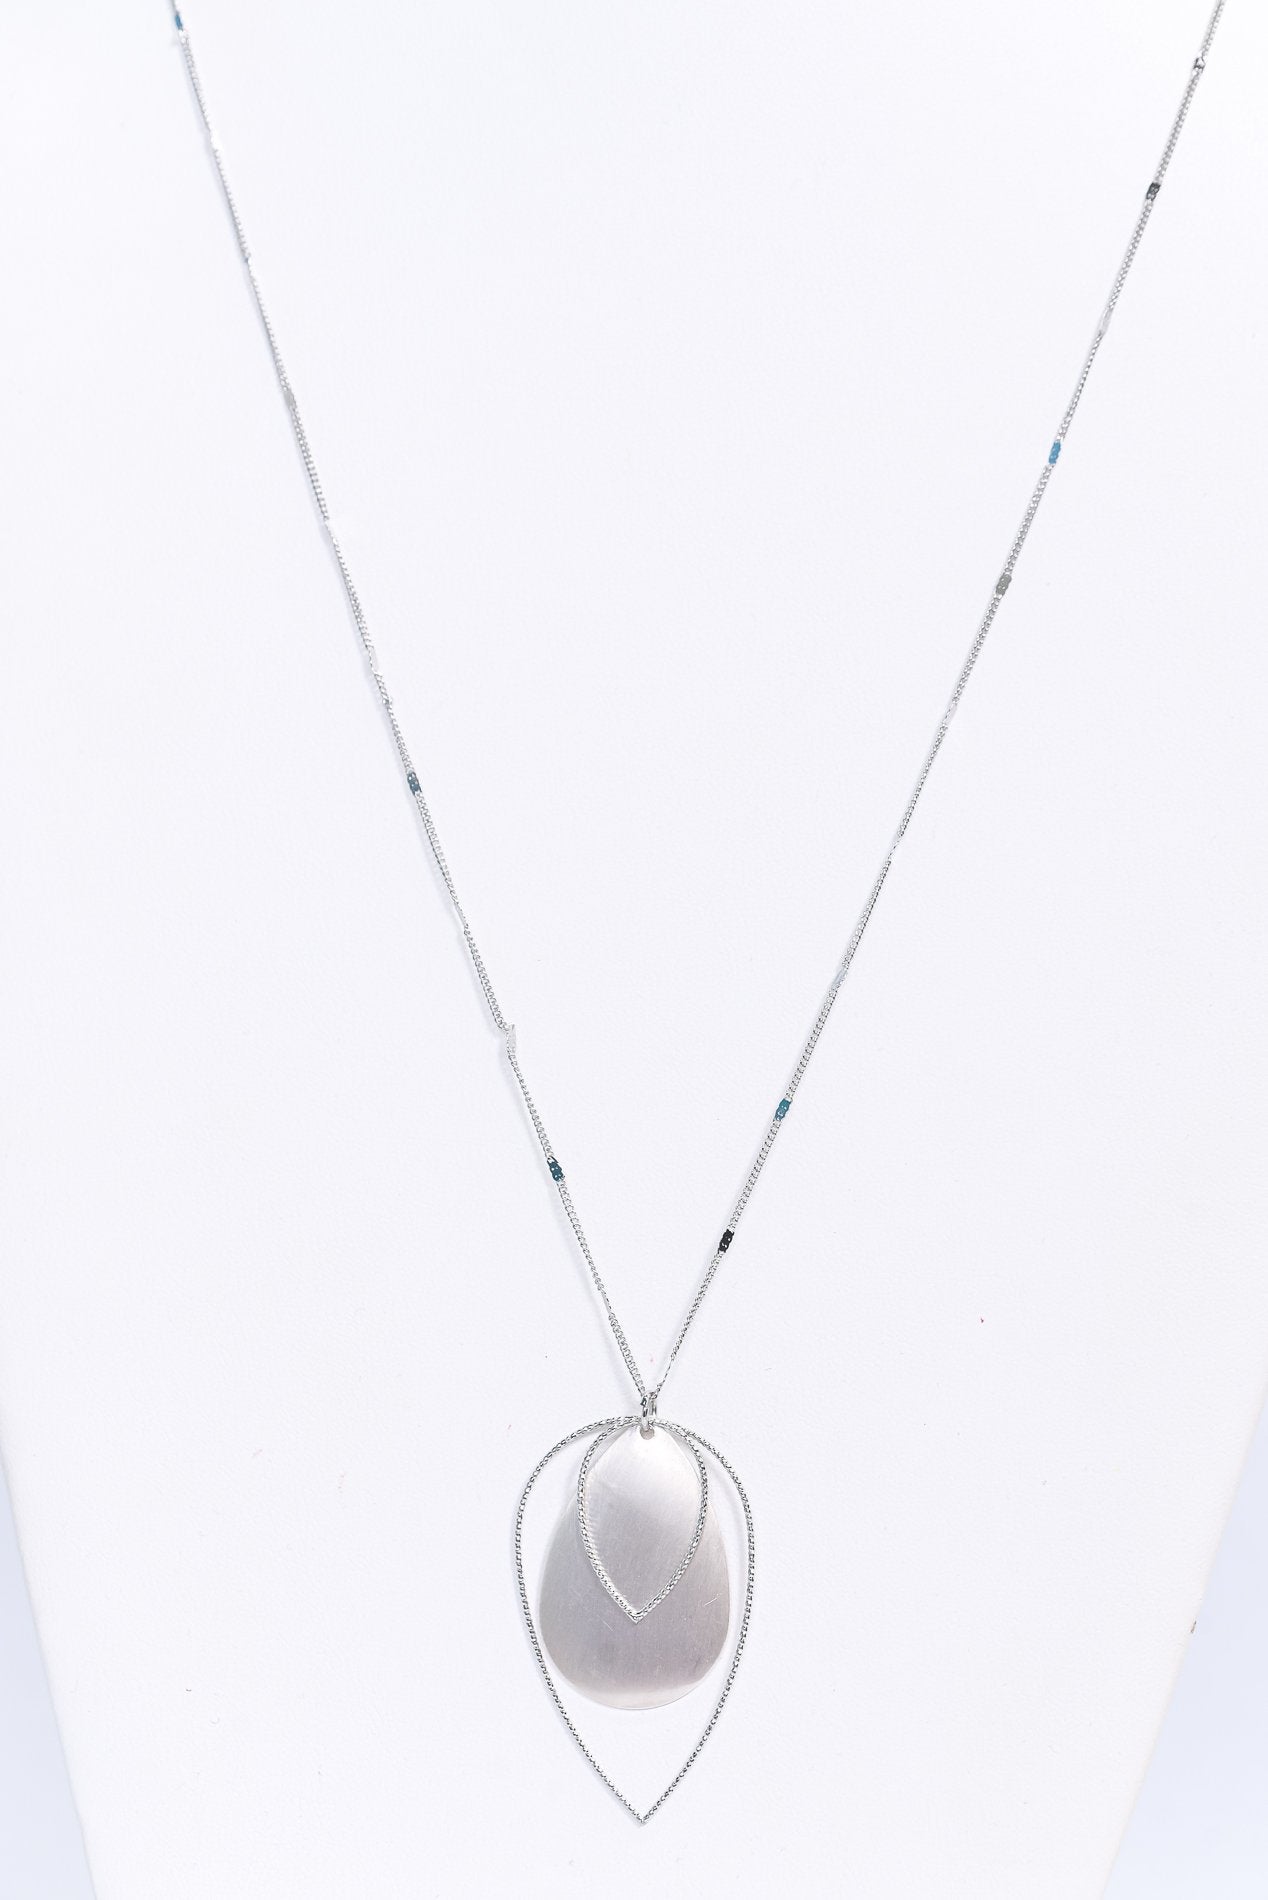 Silver/Triple Layered/Teardrop Necklace - NEK3874SI